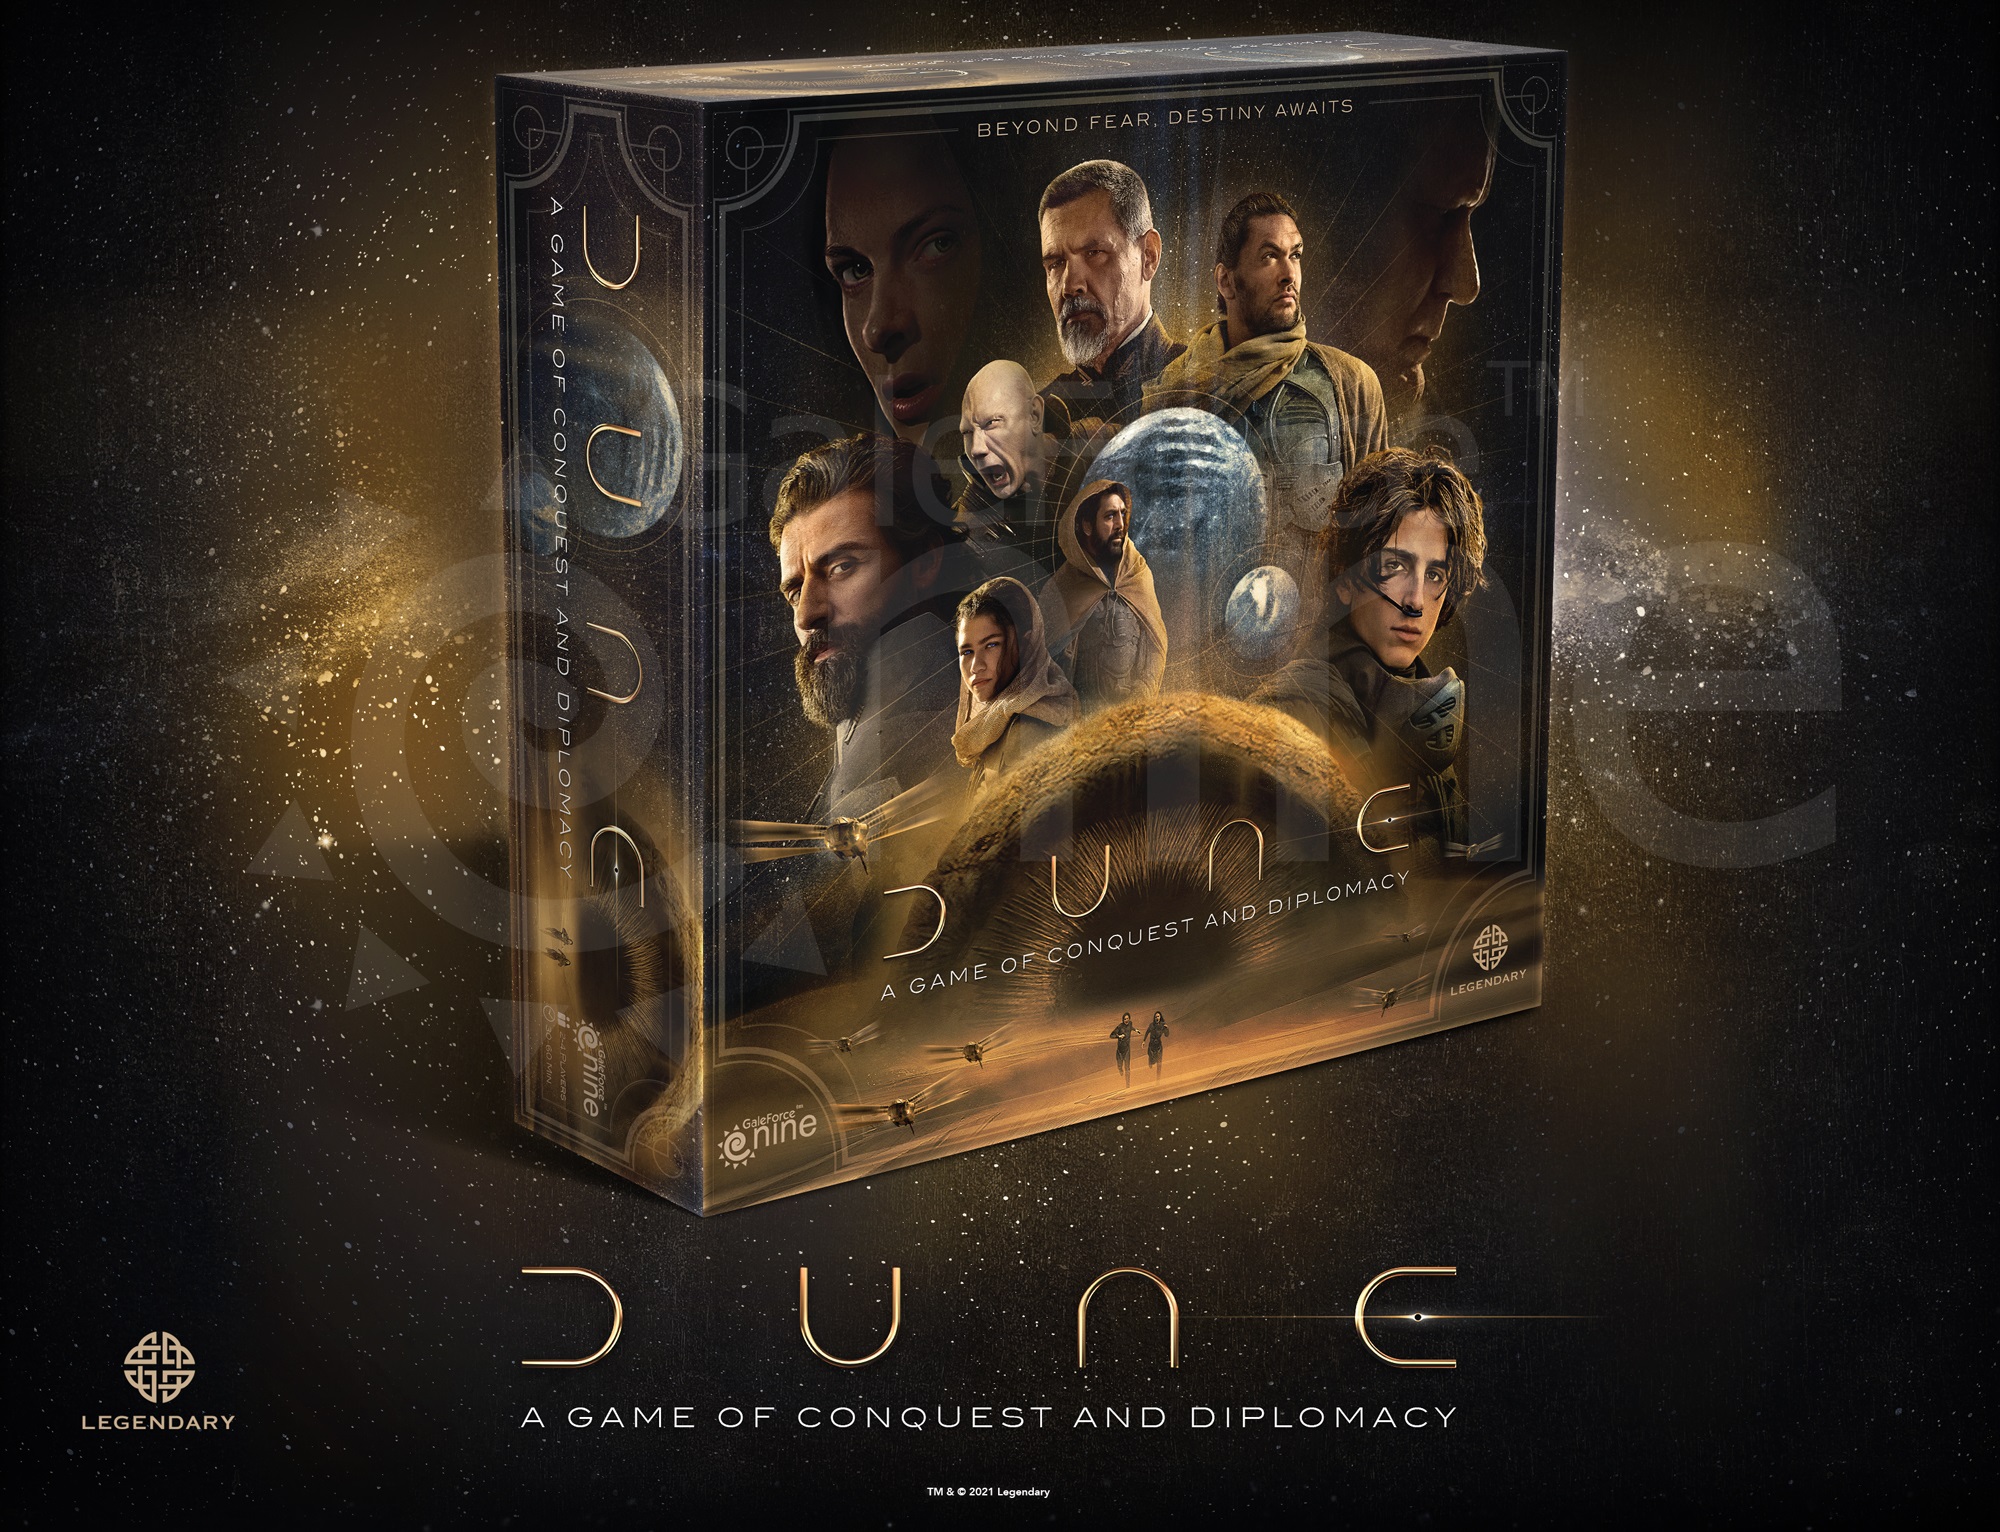 Dune (Film Version) 